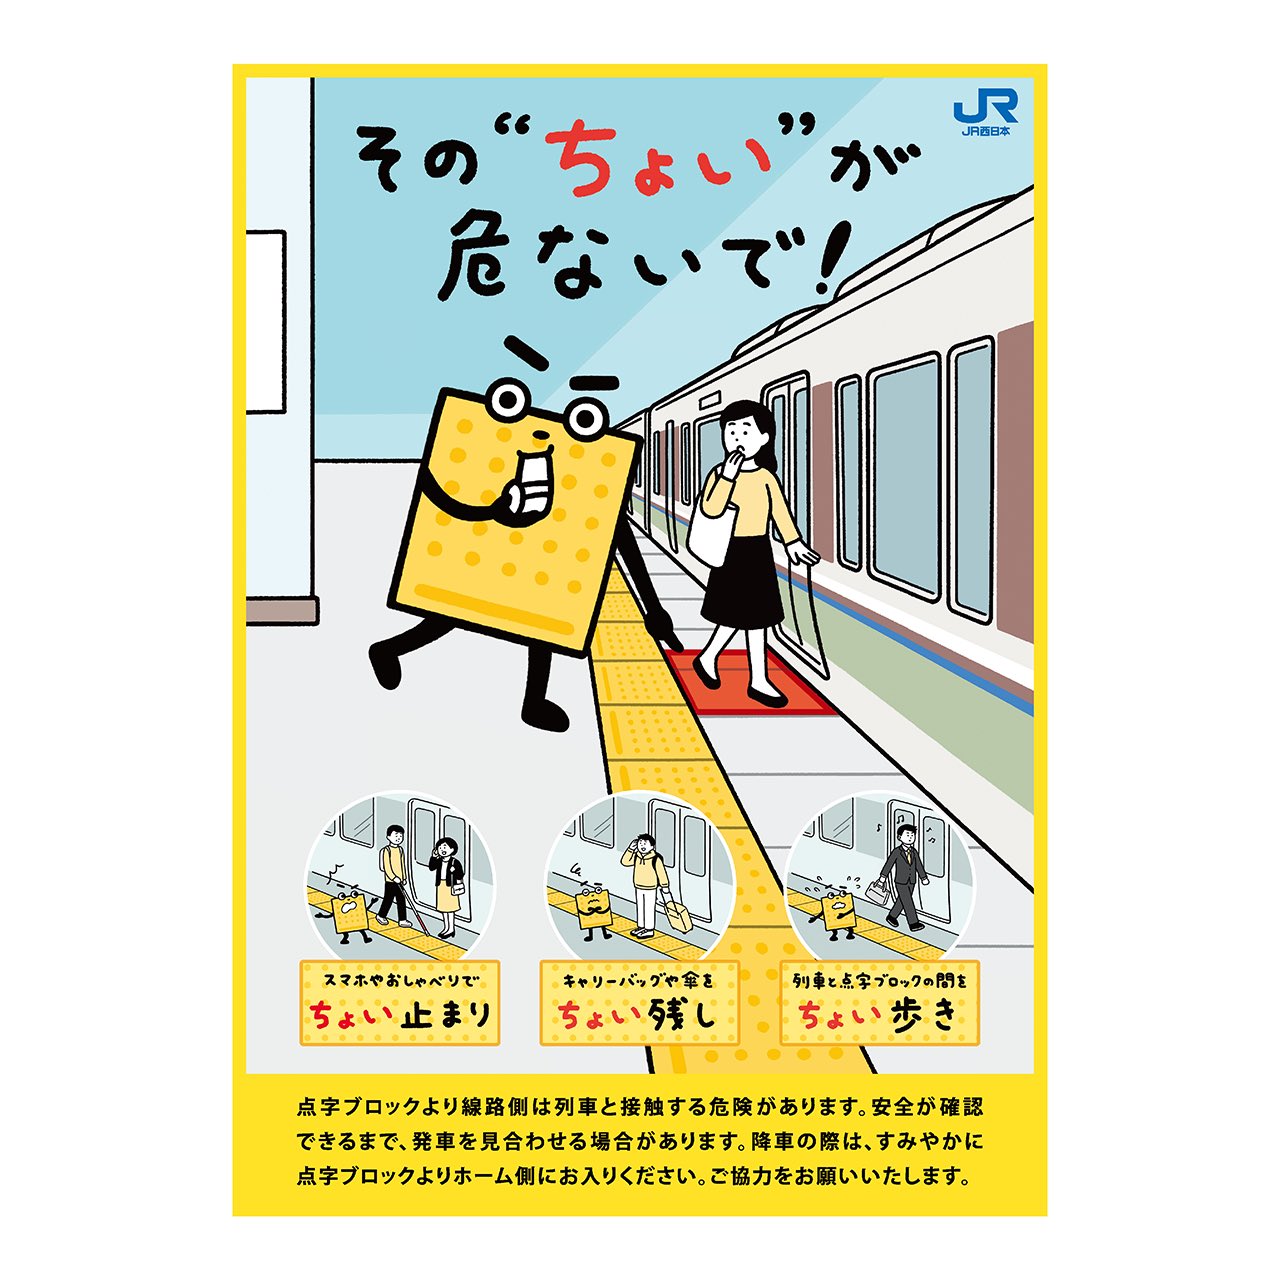 くにとも Jr西日本 点字ブロック マナーポスター のイラストを担当しました 文字も手書きで書いてます T Co Xfnbwnfcxr Twitter